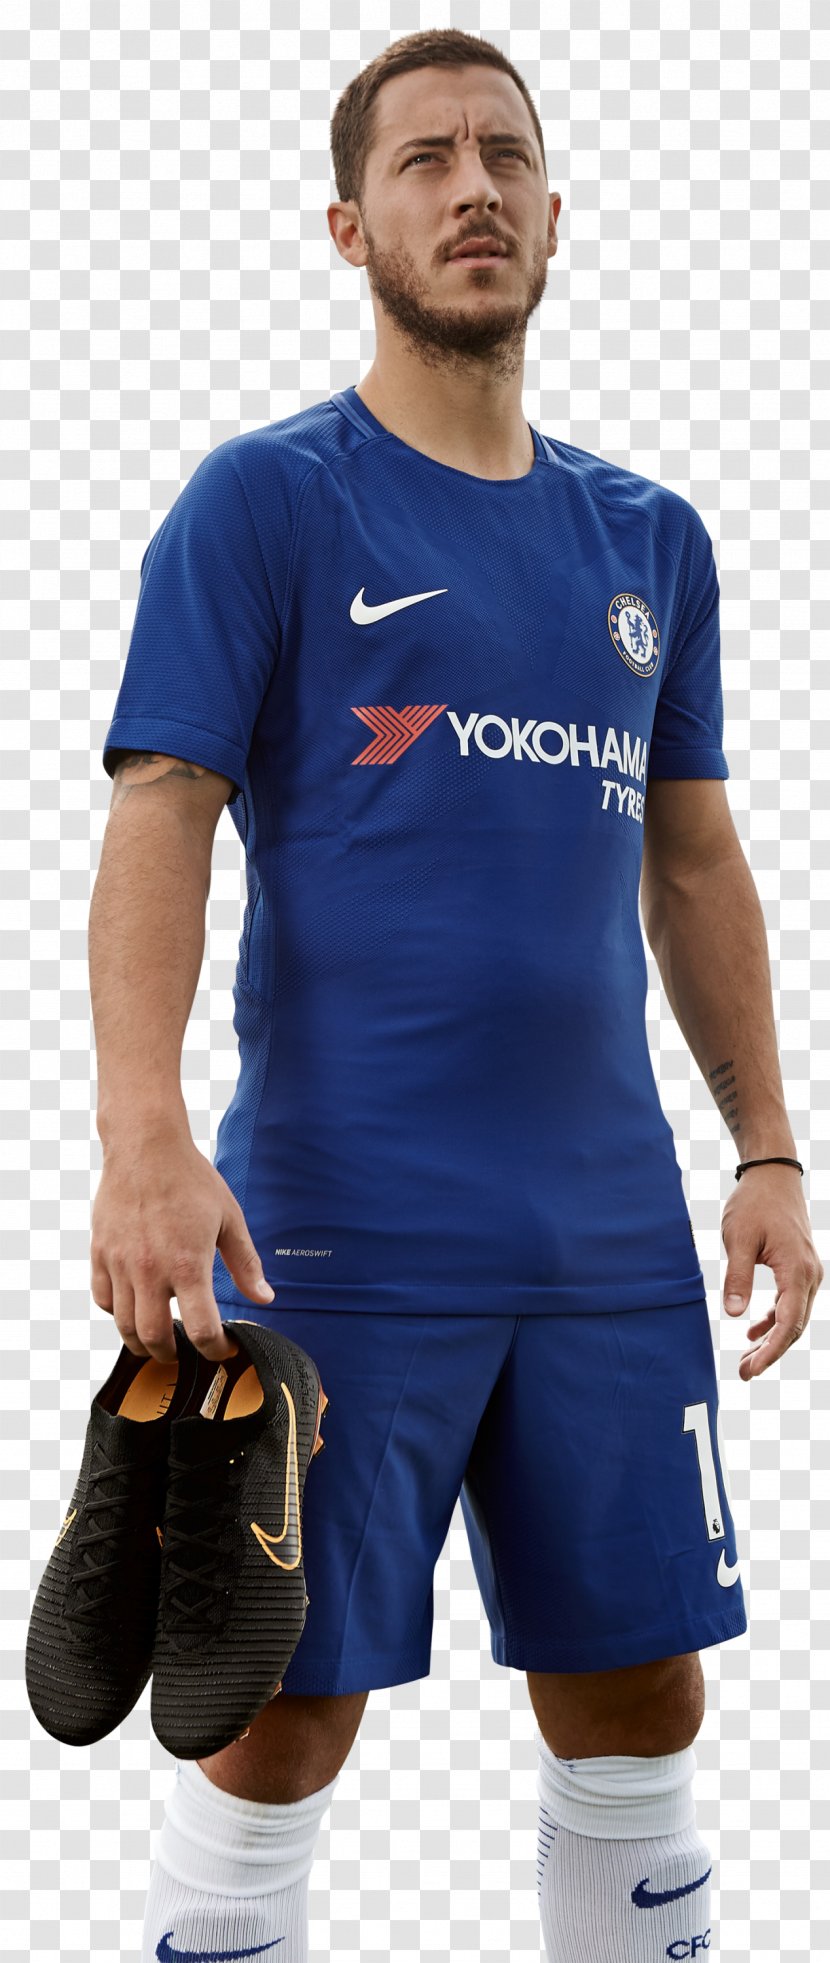 Eden Hazard Chelsea F.C. Premier League Football Boot Nike - Neck Transparent PNG